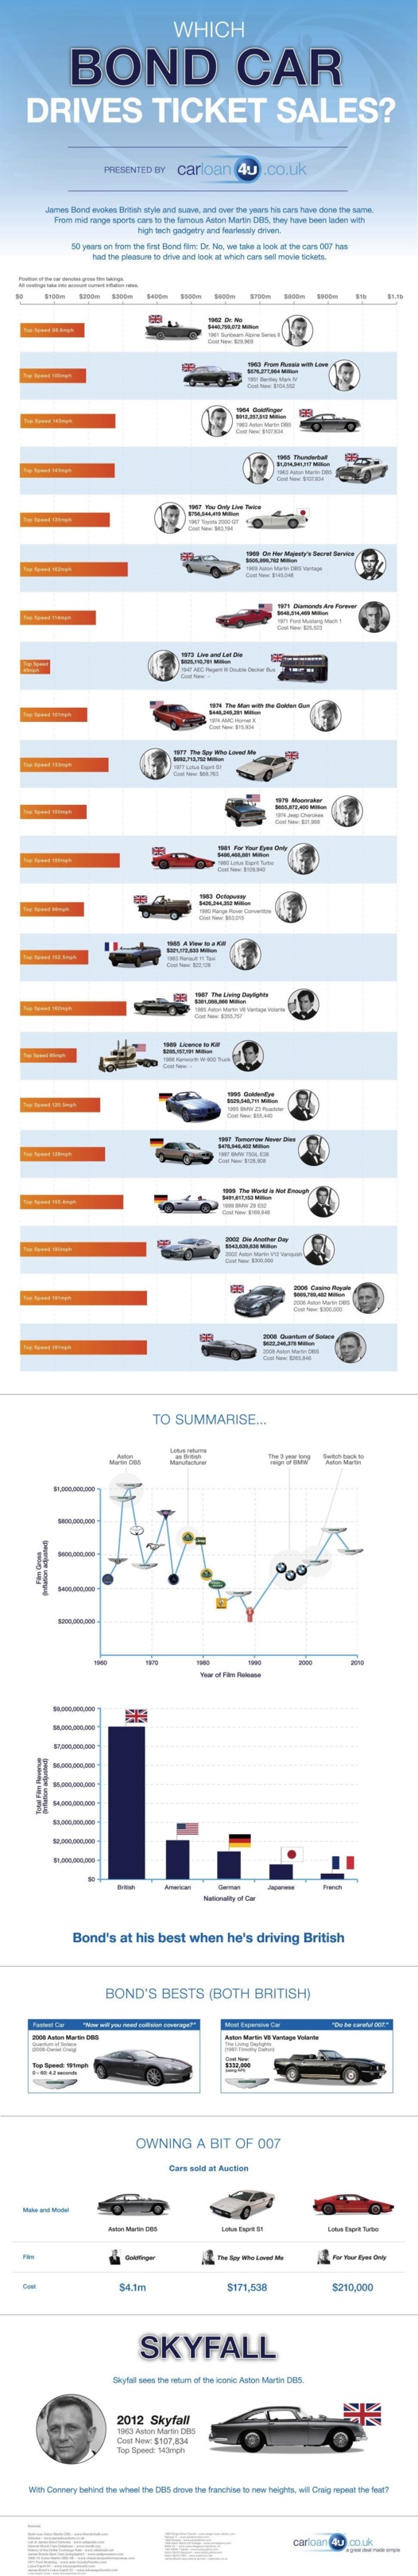 Toutes les voitures de James Bond depuis 50 ans, en 1 image